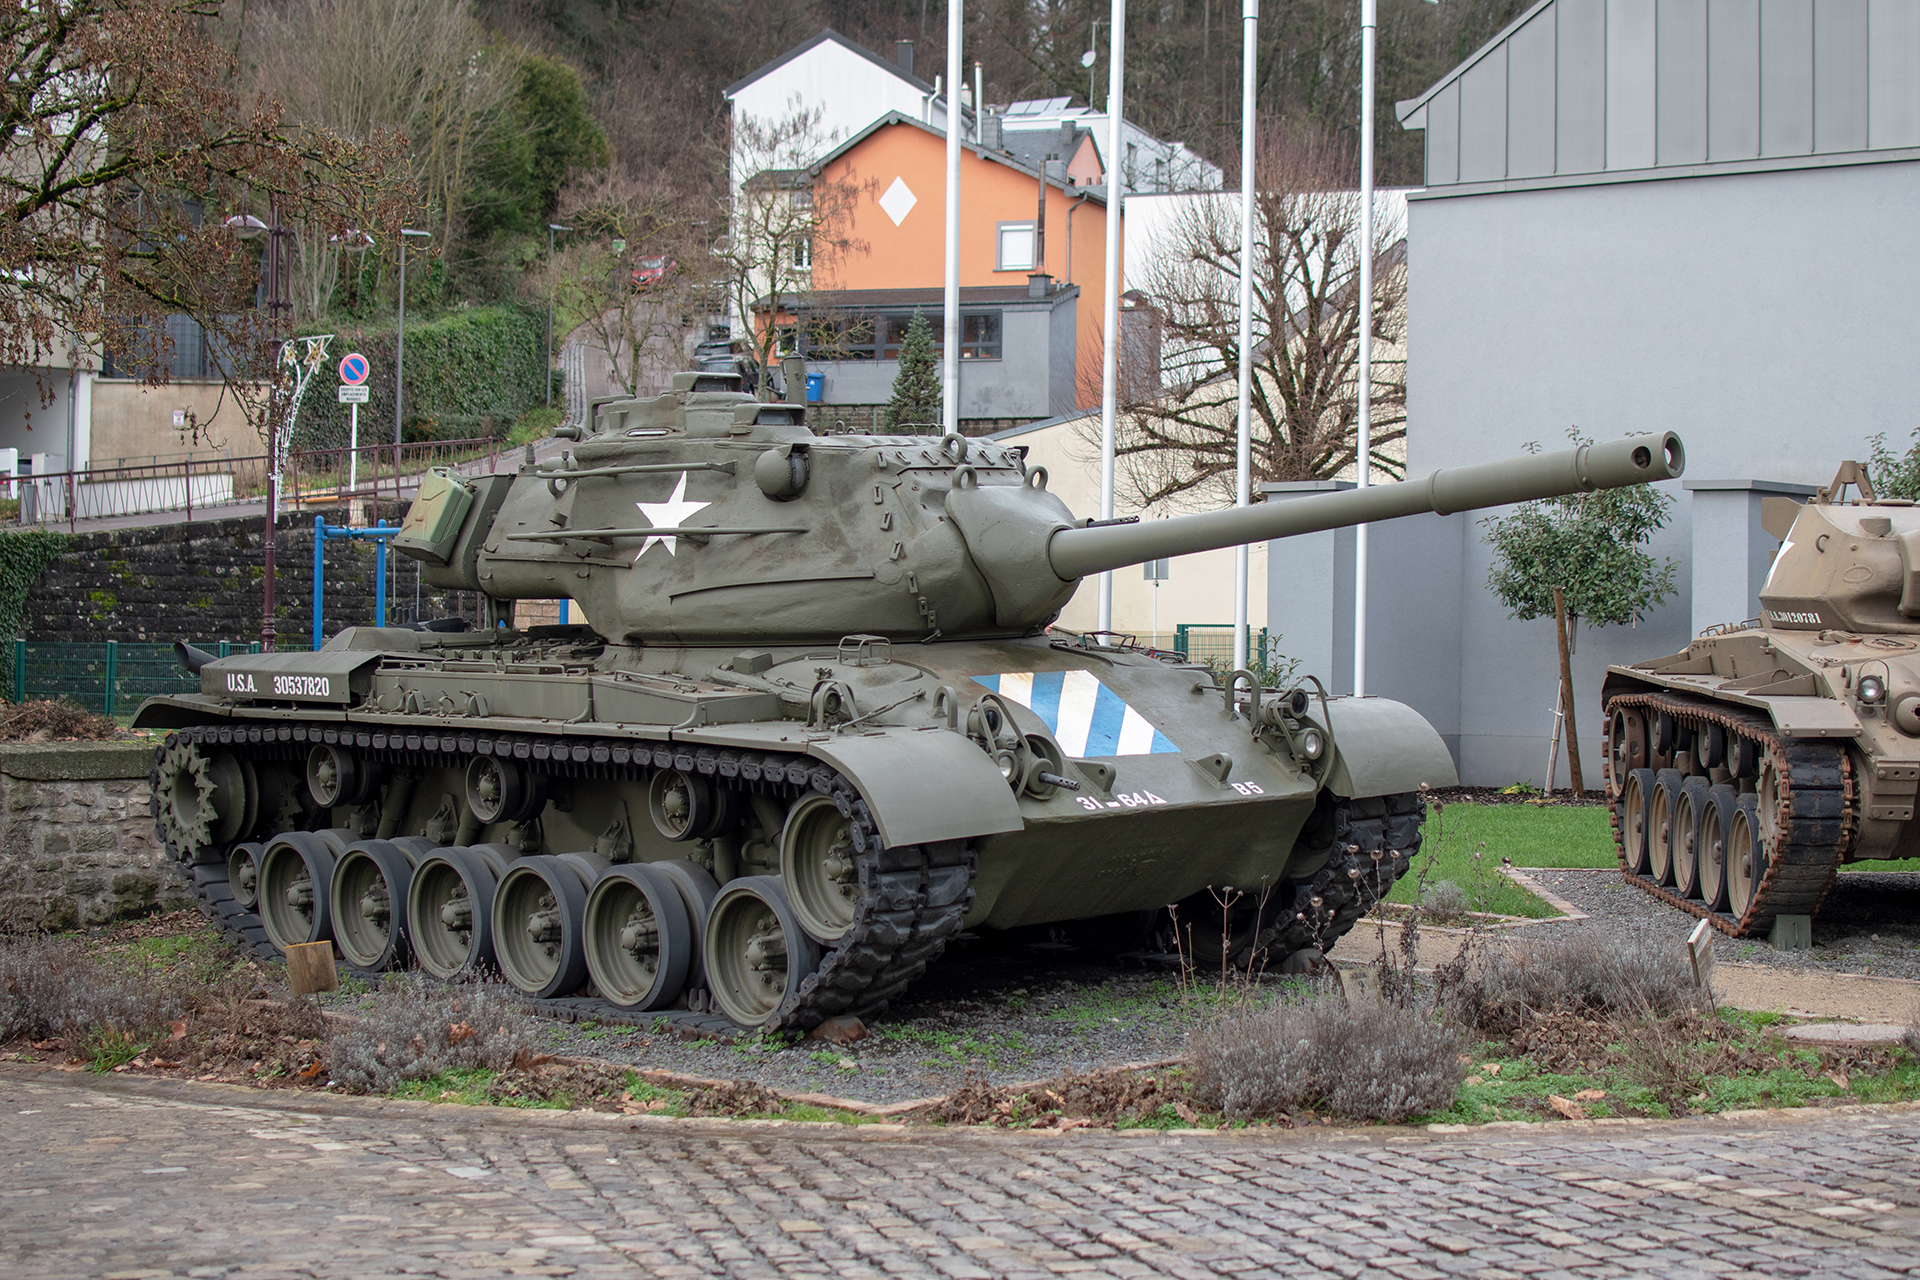  DTA M47 Patton front right - Musée National d'Histoire Militaire, Diekirch